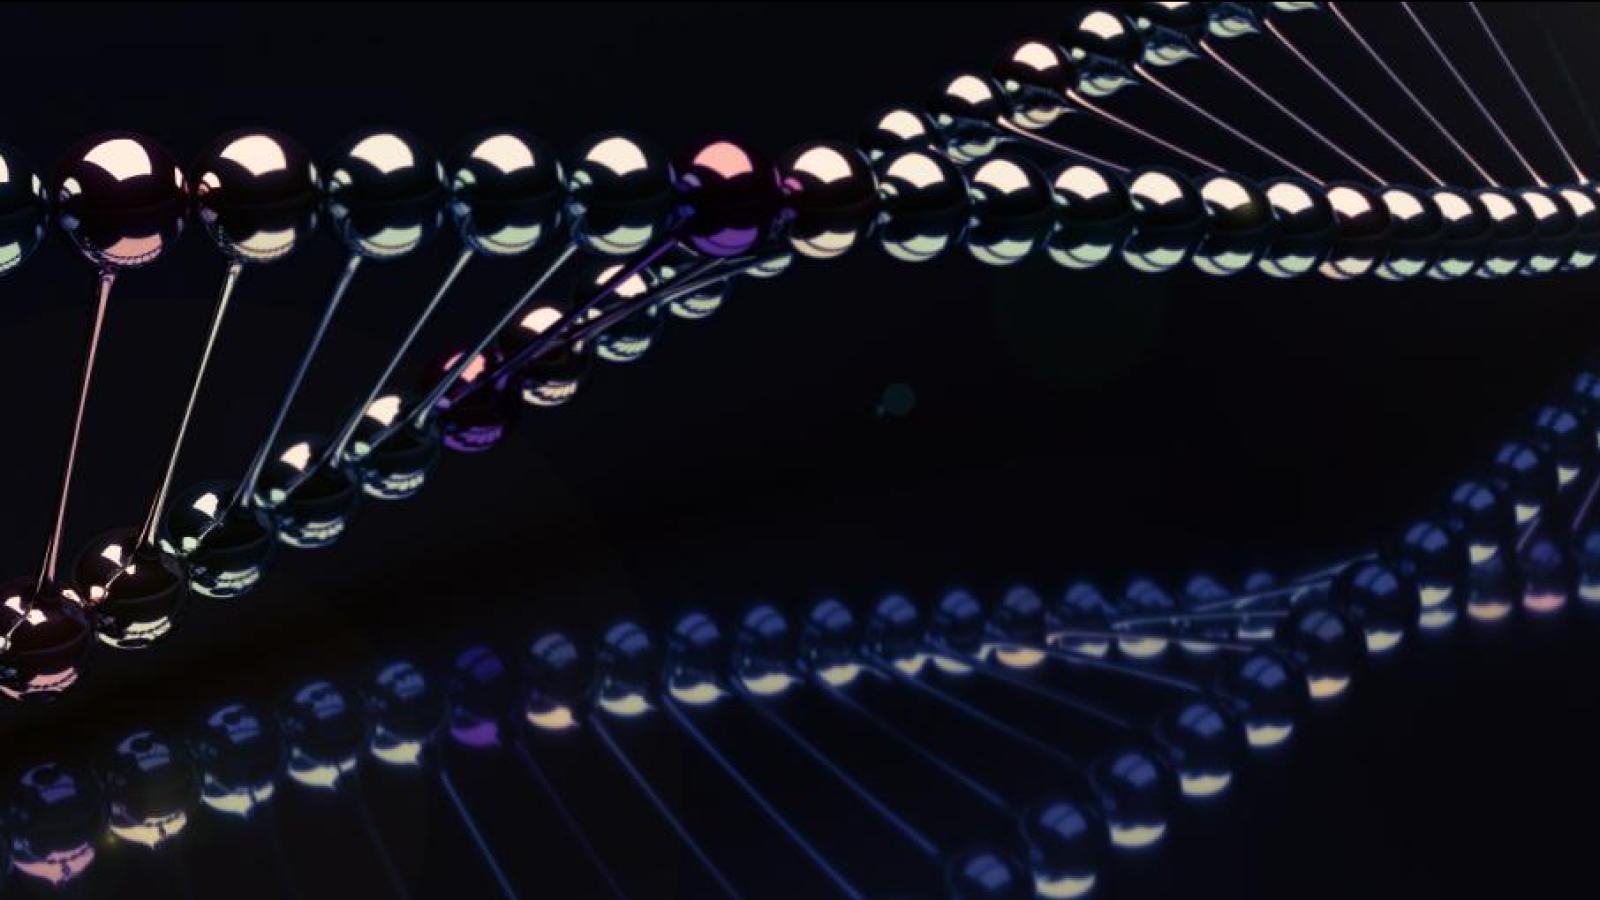 A model showing DNA strands